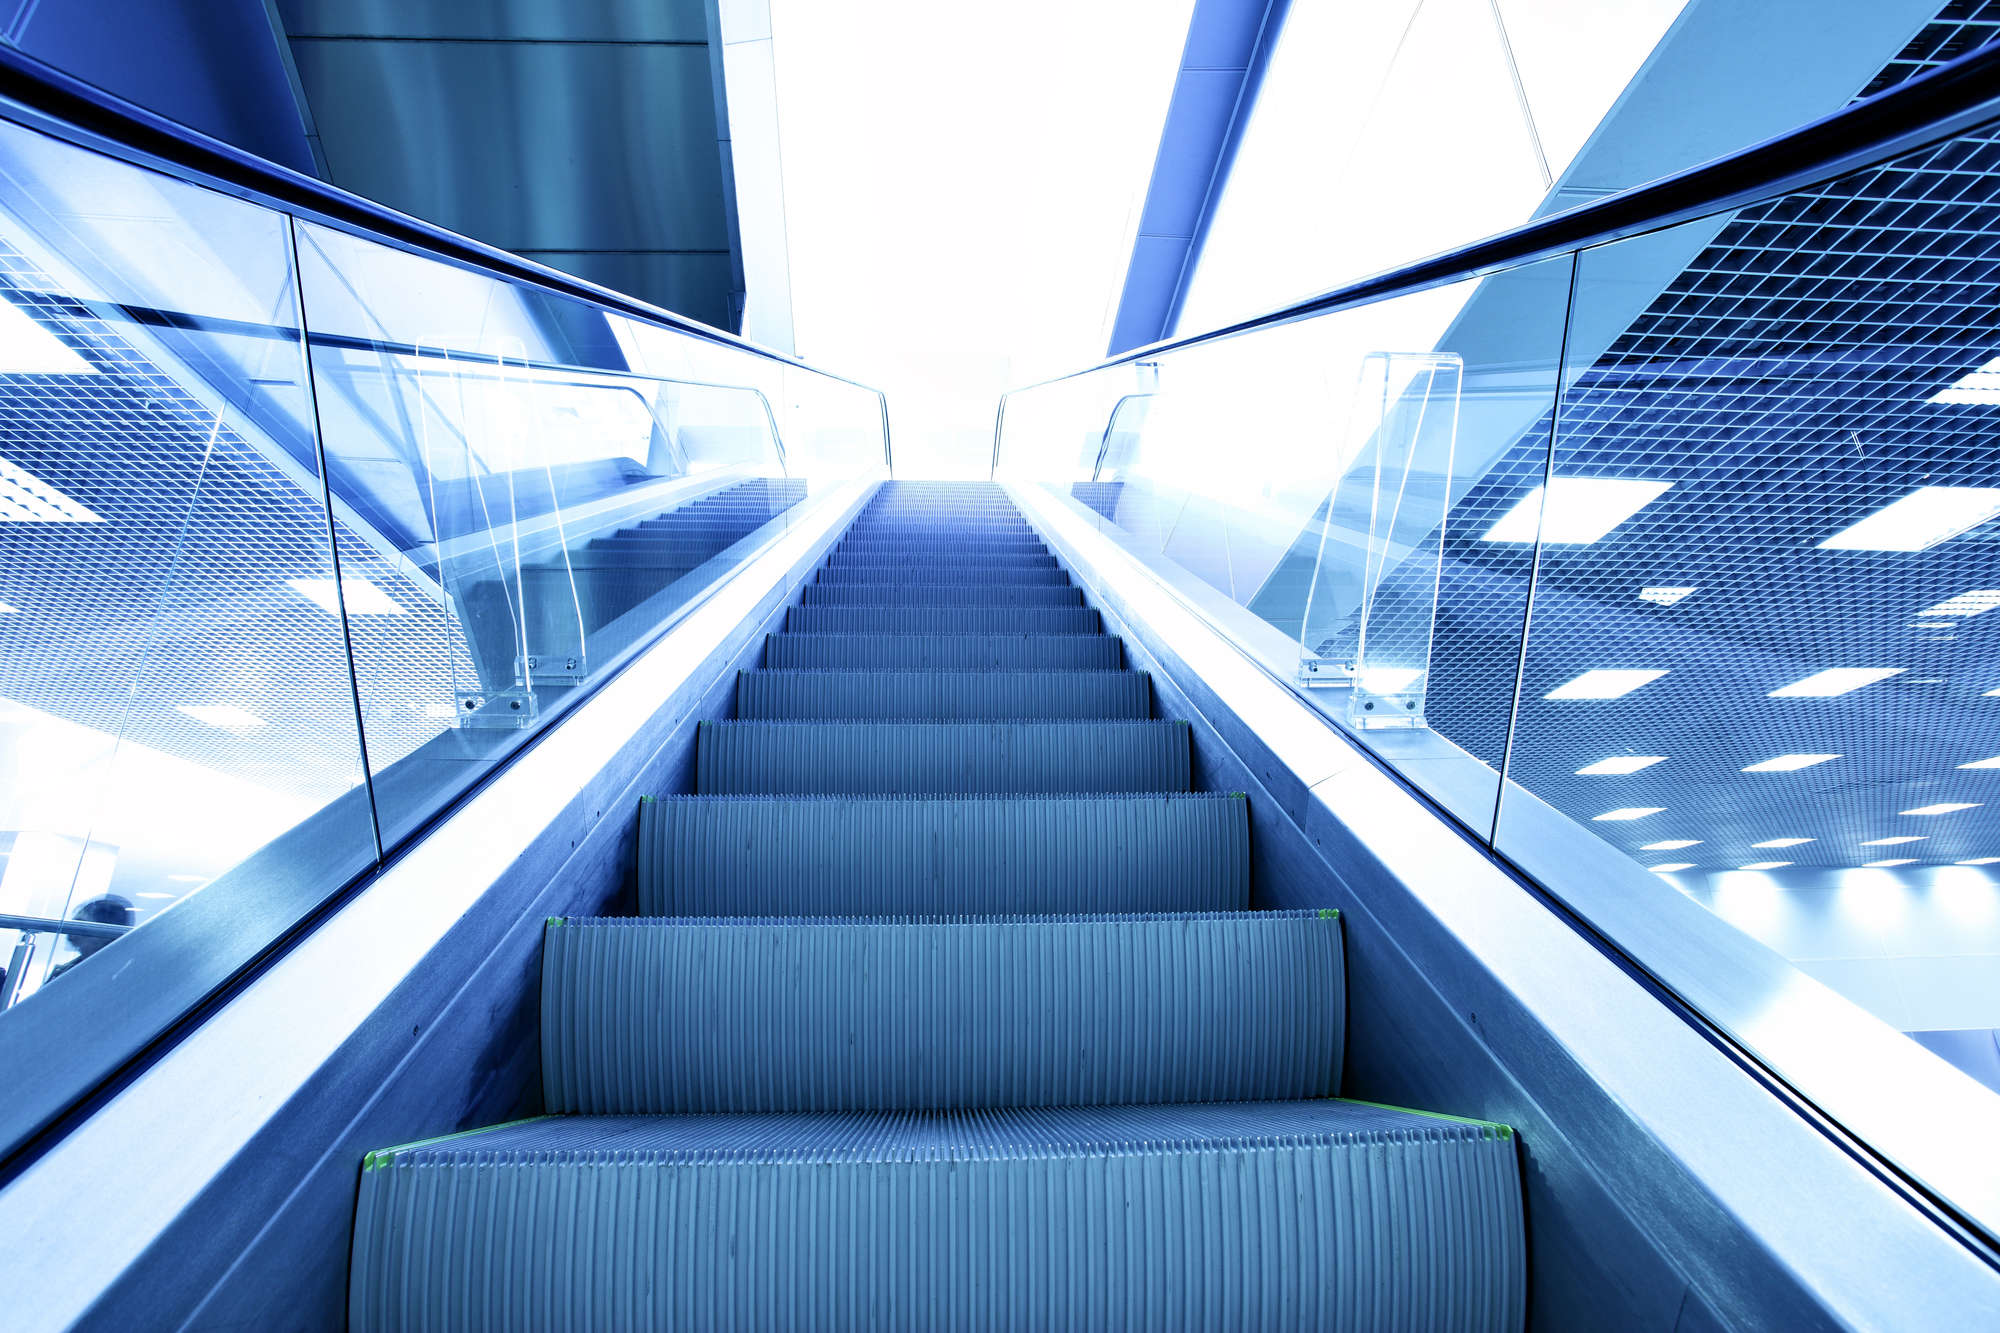 Perspectiva de la escalera mecánica en tonos de color azul.